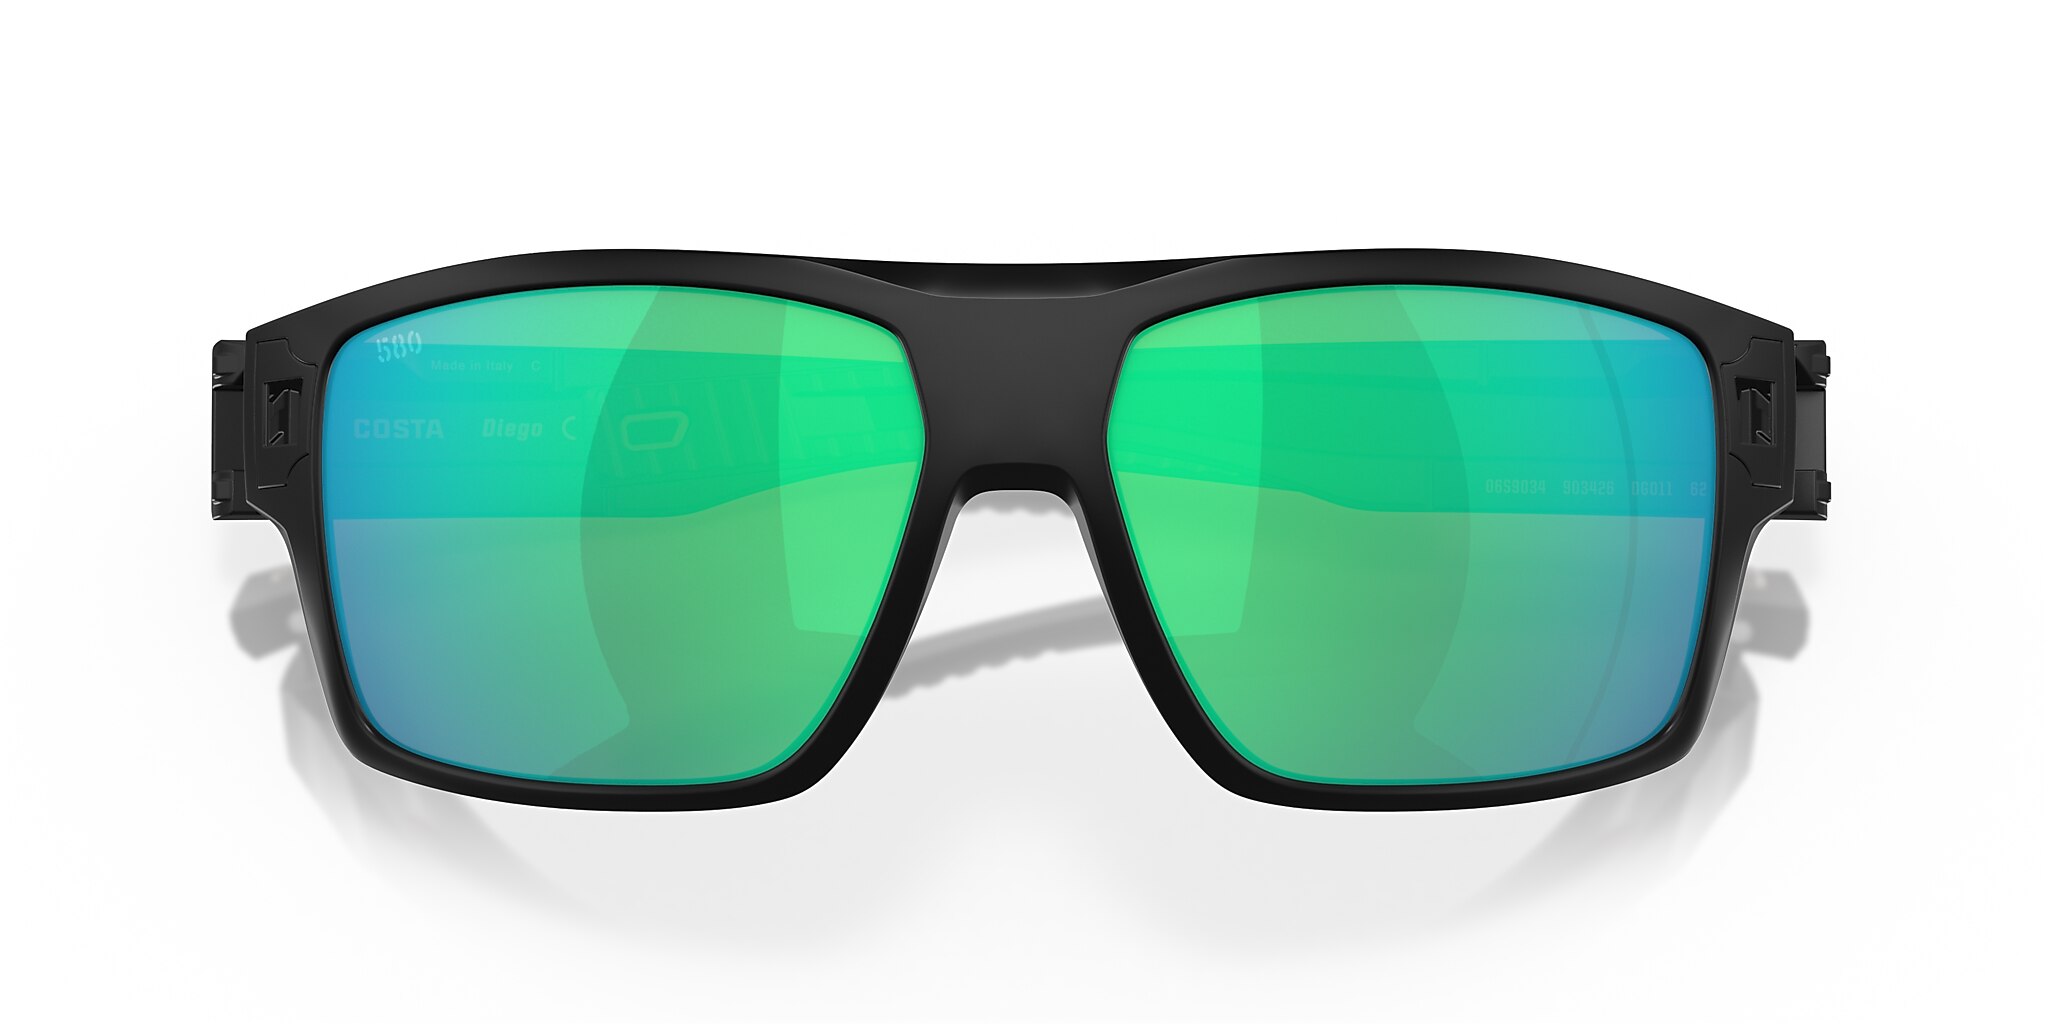 Diego Polarized Sunglasses in Green Mirror | Costa Del Mar®